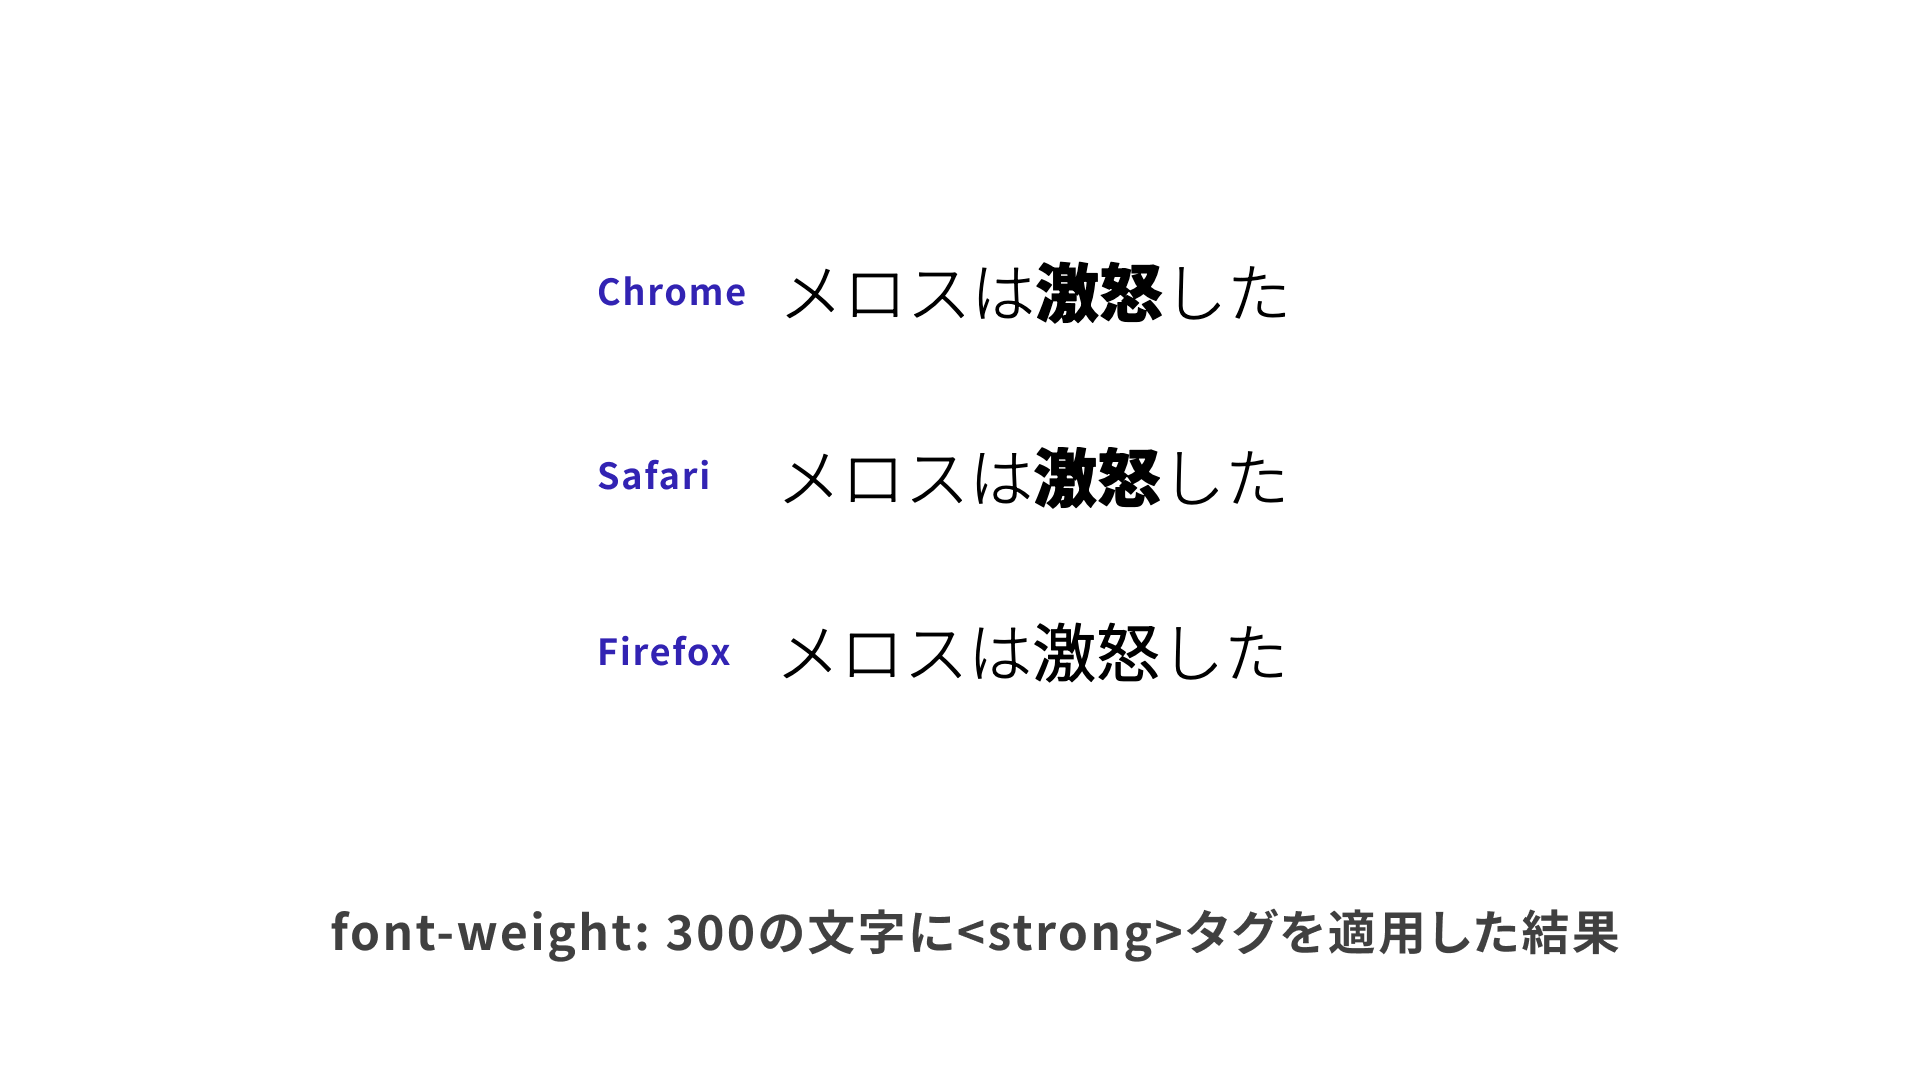 strongタグのデフォルトスタイルによる違い。Firefoxだけ細く表示される